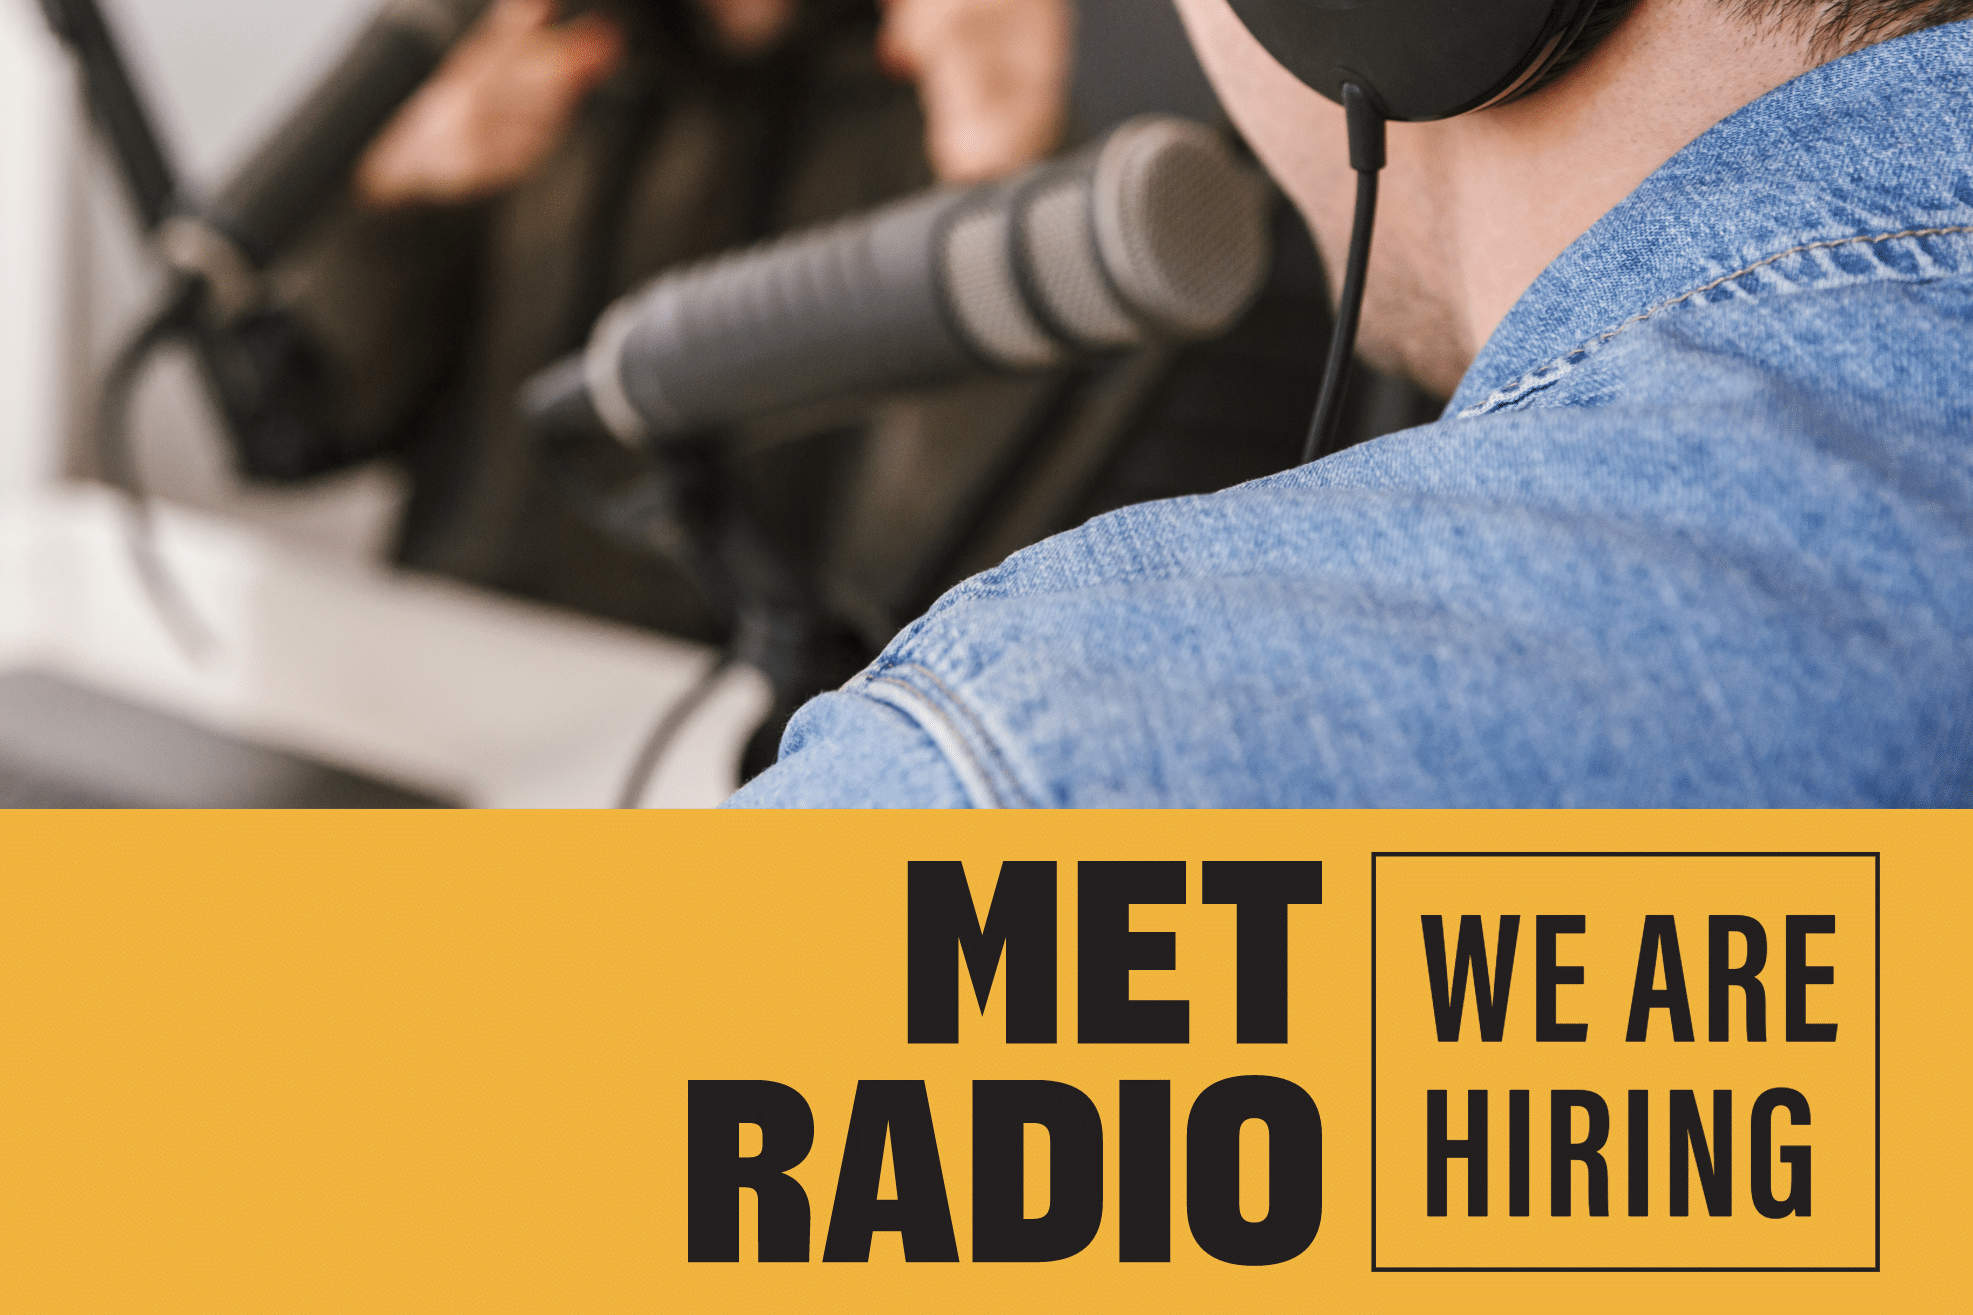 Met Radio is hiring